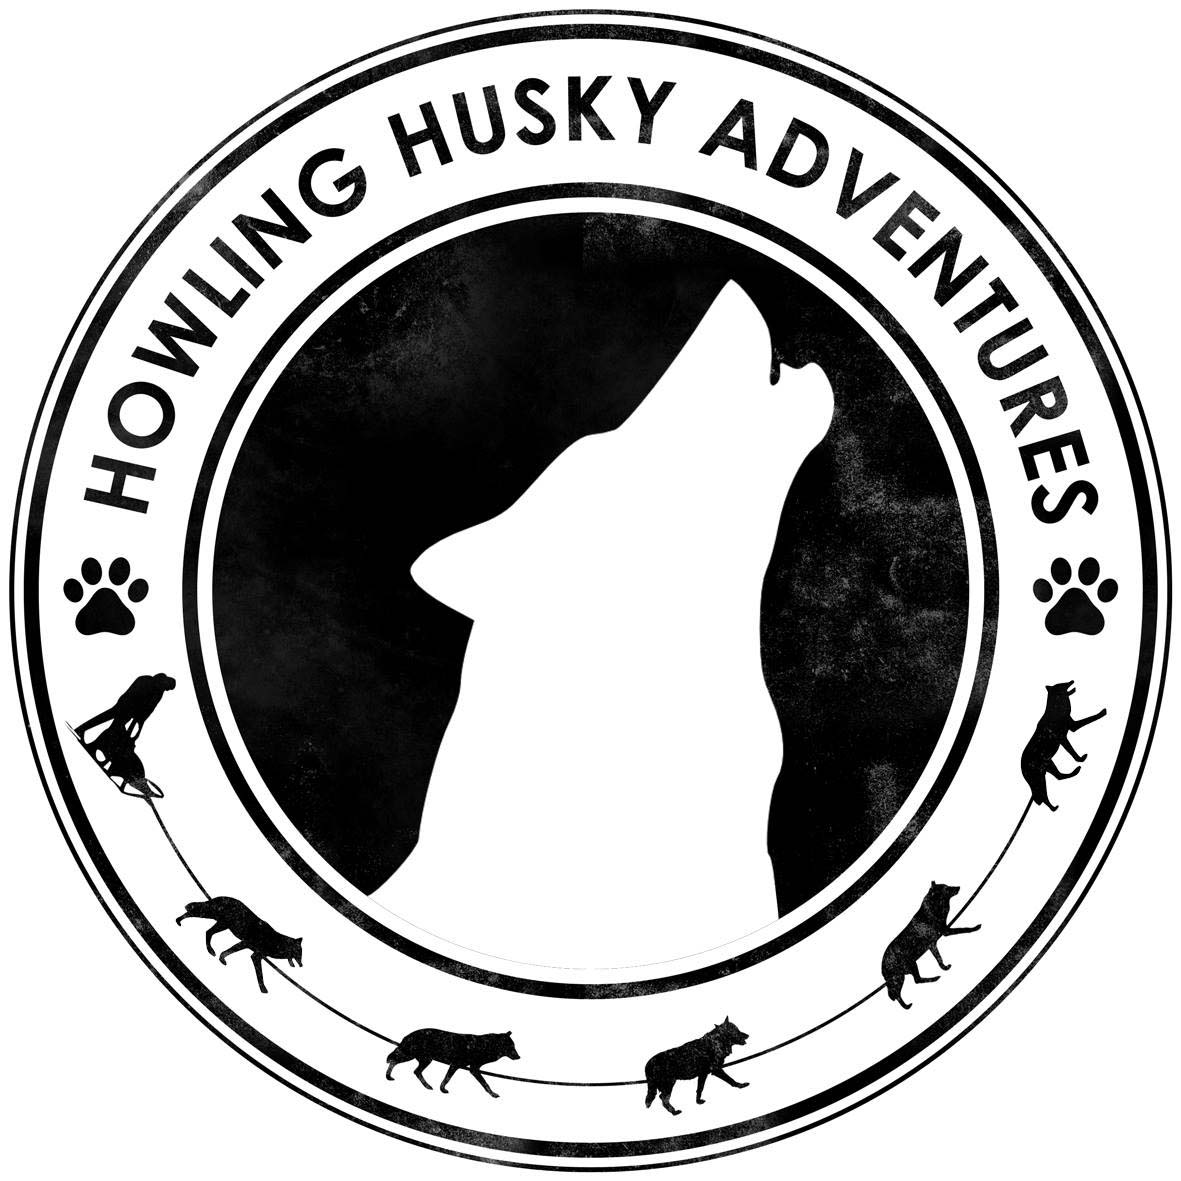 Howling Husky Adventures logo